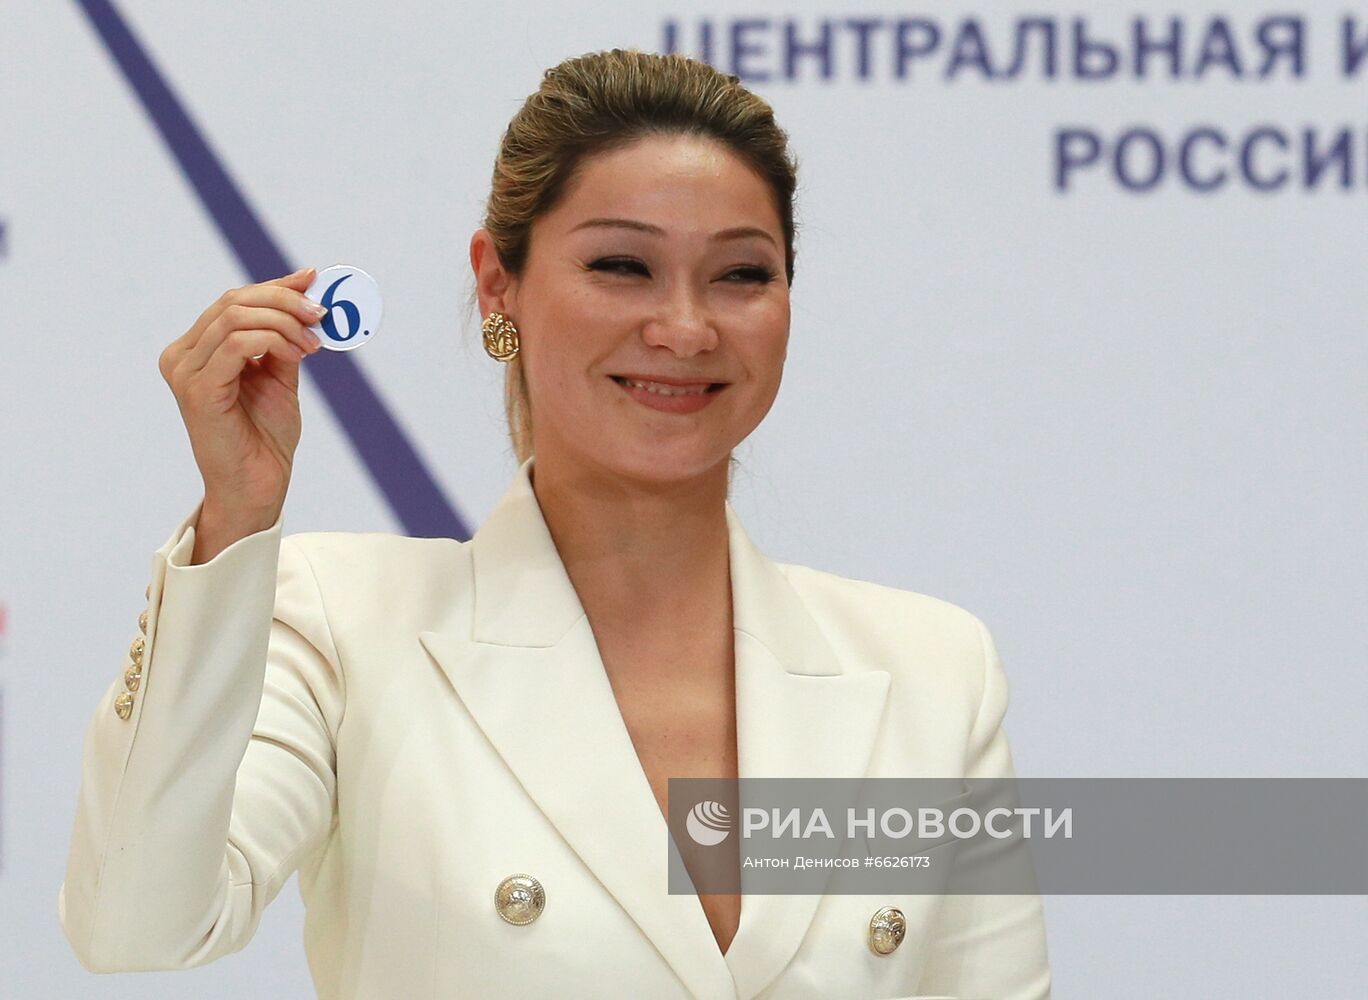 Жеребьевка по определению мест партий в избирательном бюллетене на выборах депутатов Госдумы РФ